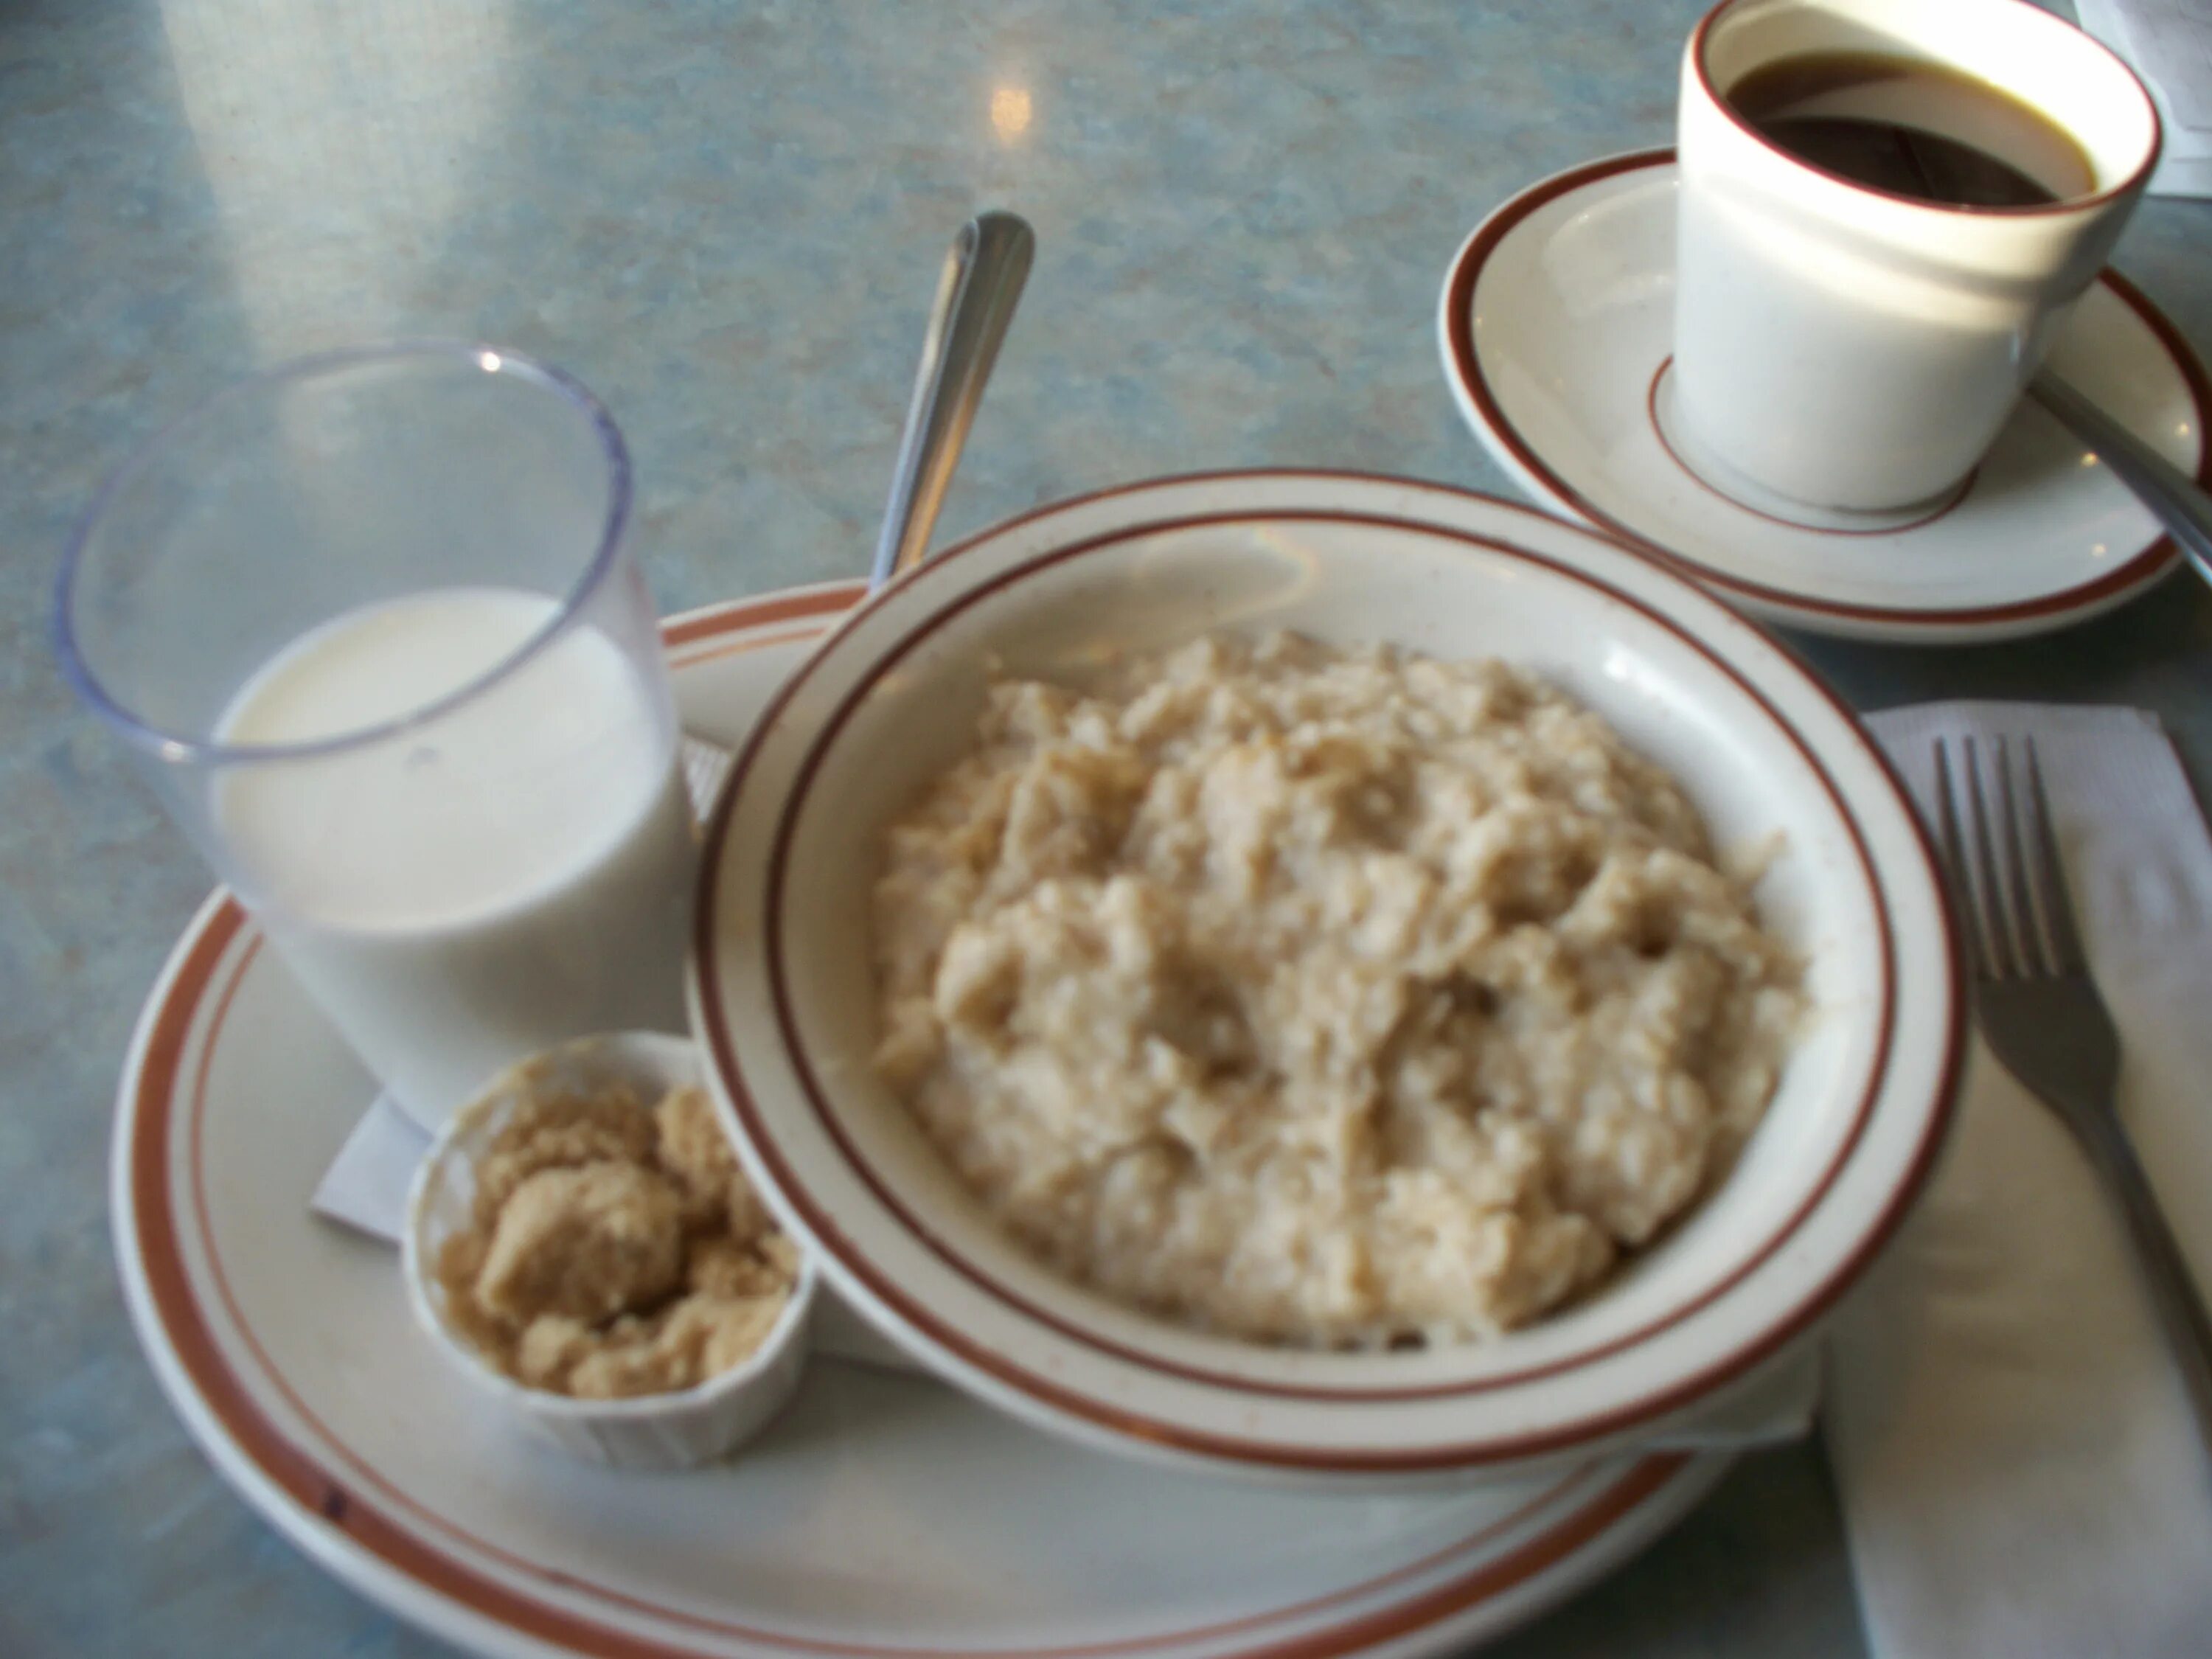 Завтрак каша какао. Каша в столовой. Каша с какао. Каша овсяная в столовой. Рисовая каша и кофе.